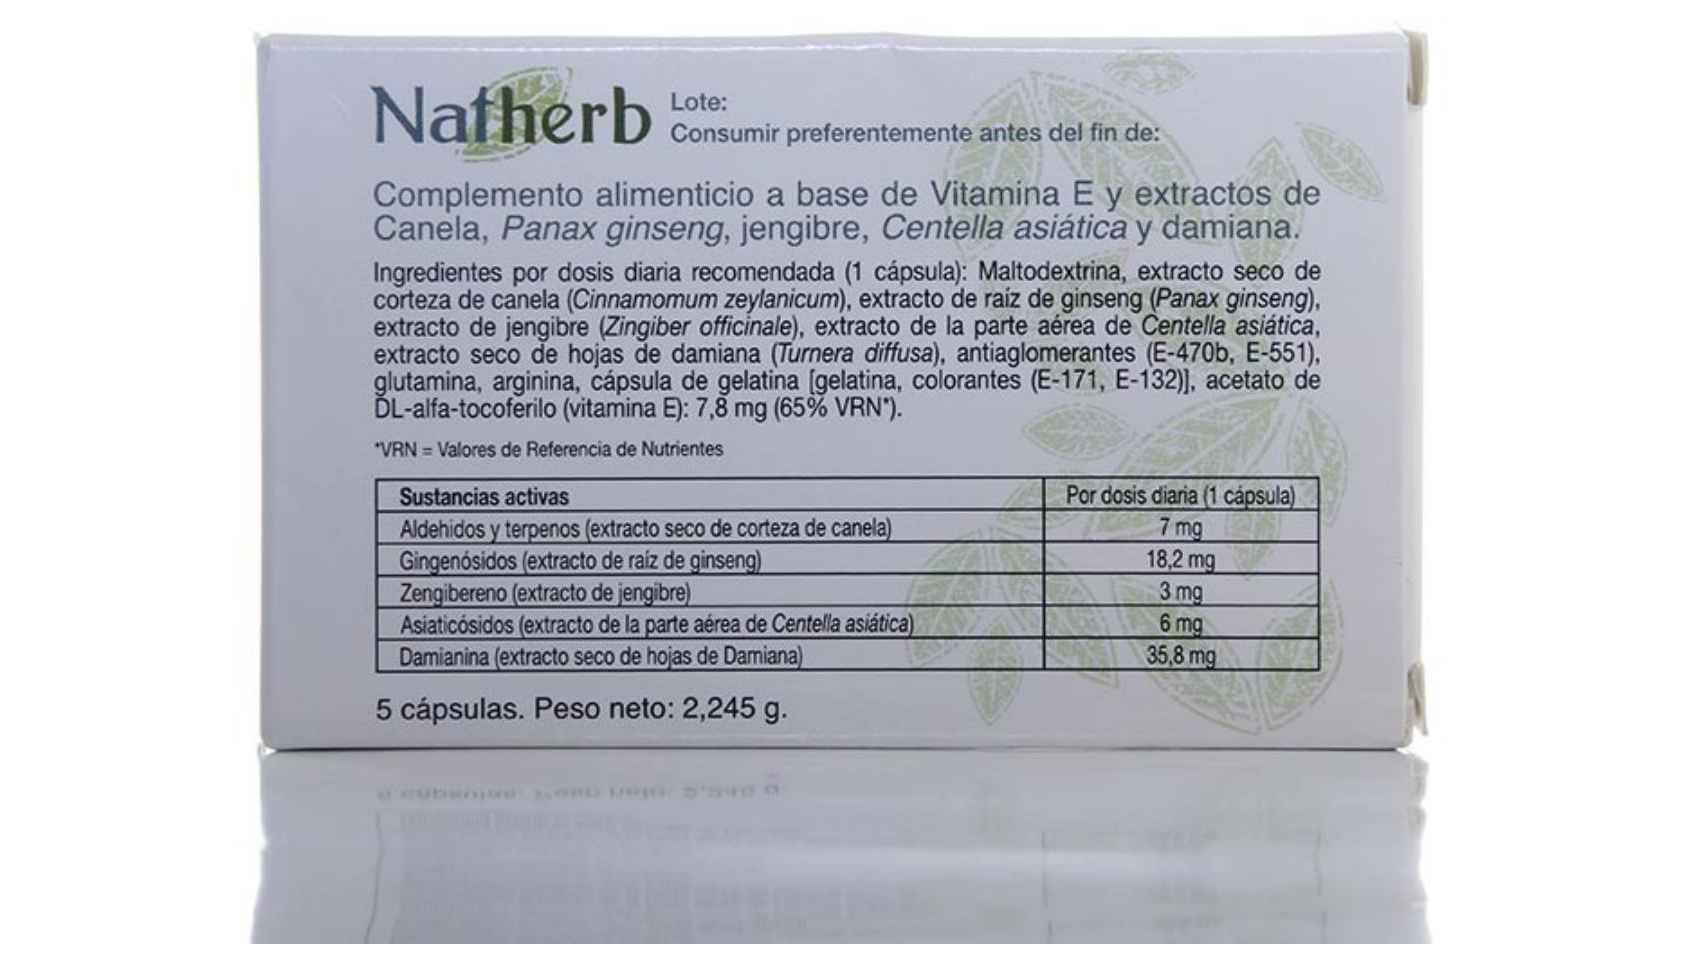 NatHerb solo describía productos naturales entre sus componentes.